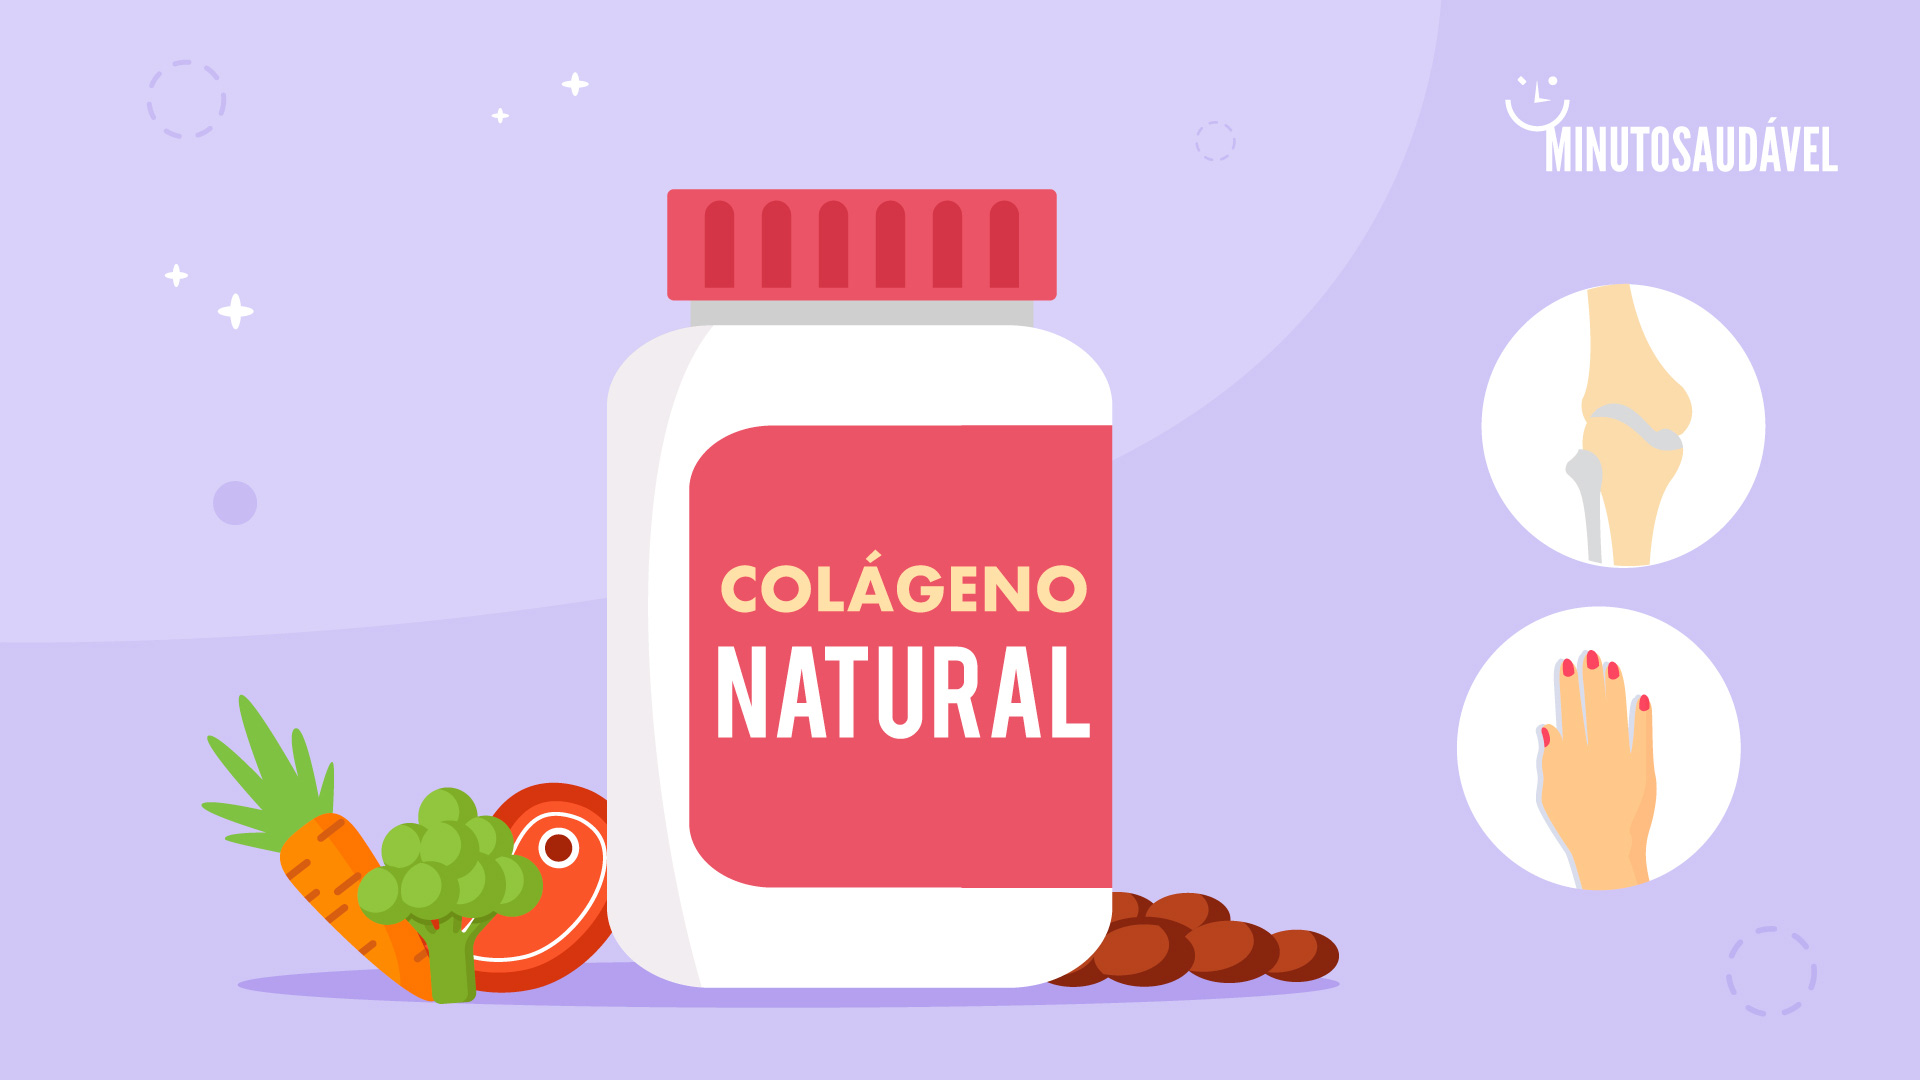 Foto de capa do artigo "Colágeno natural: o que é e para que serve"